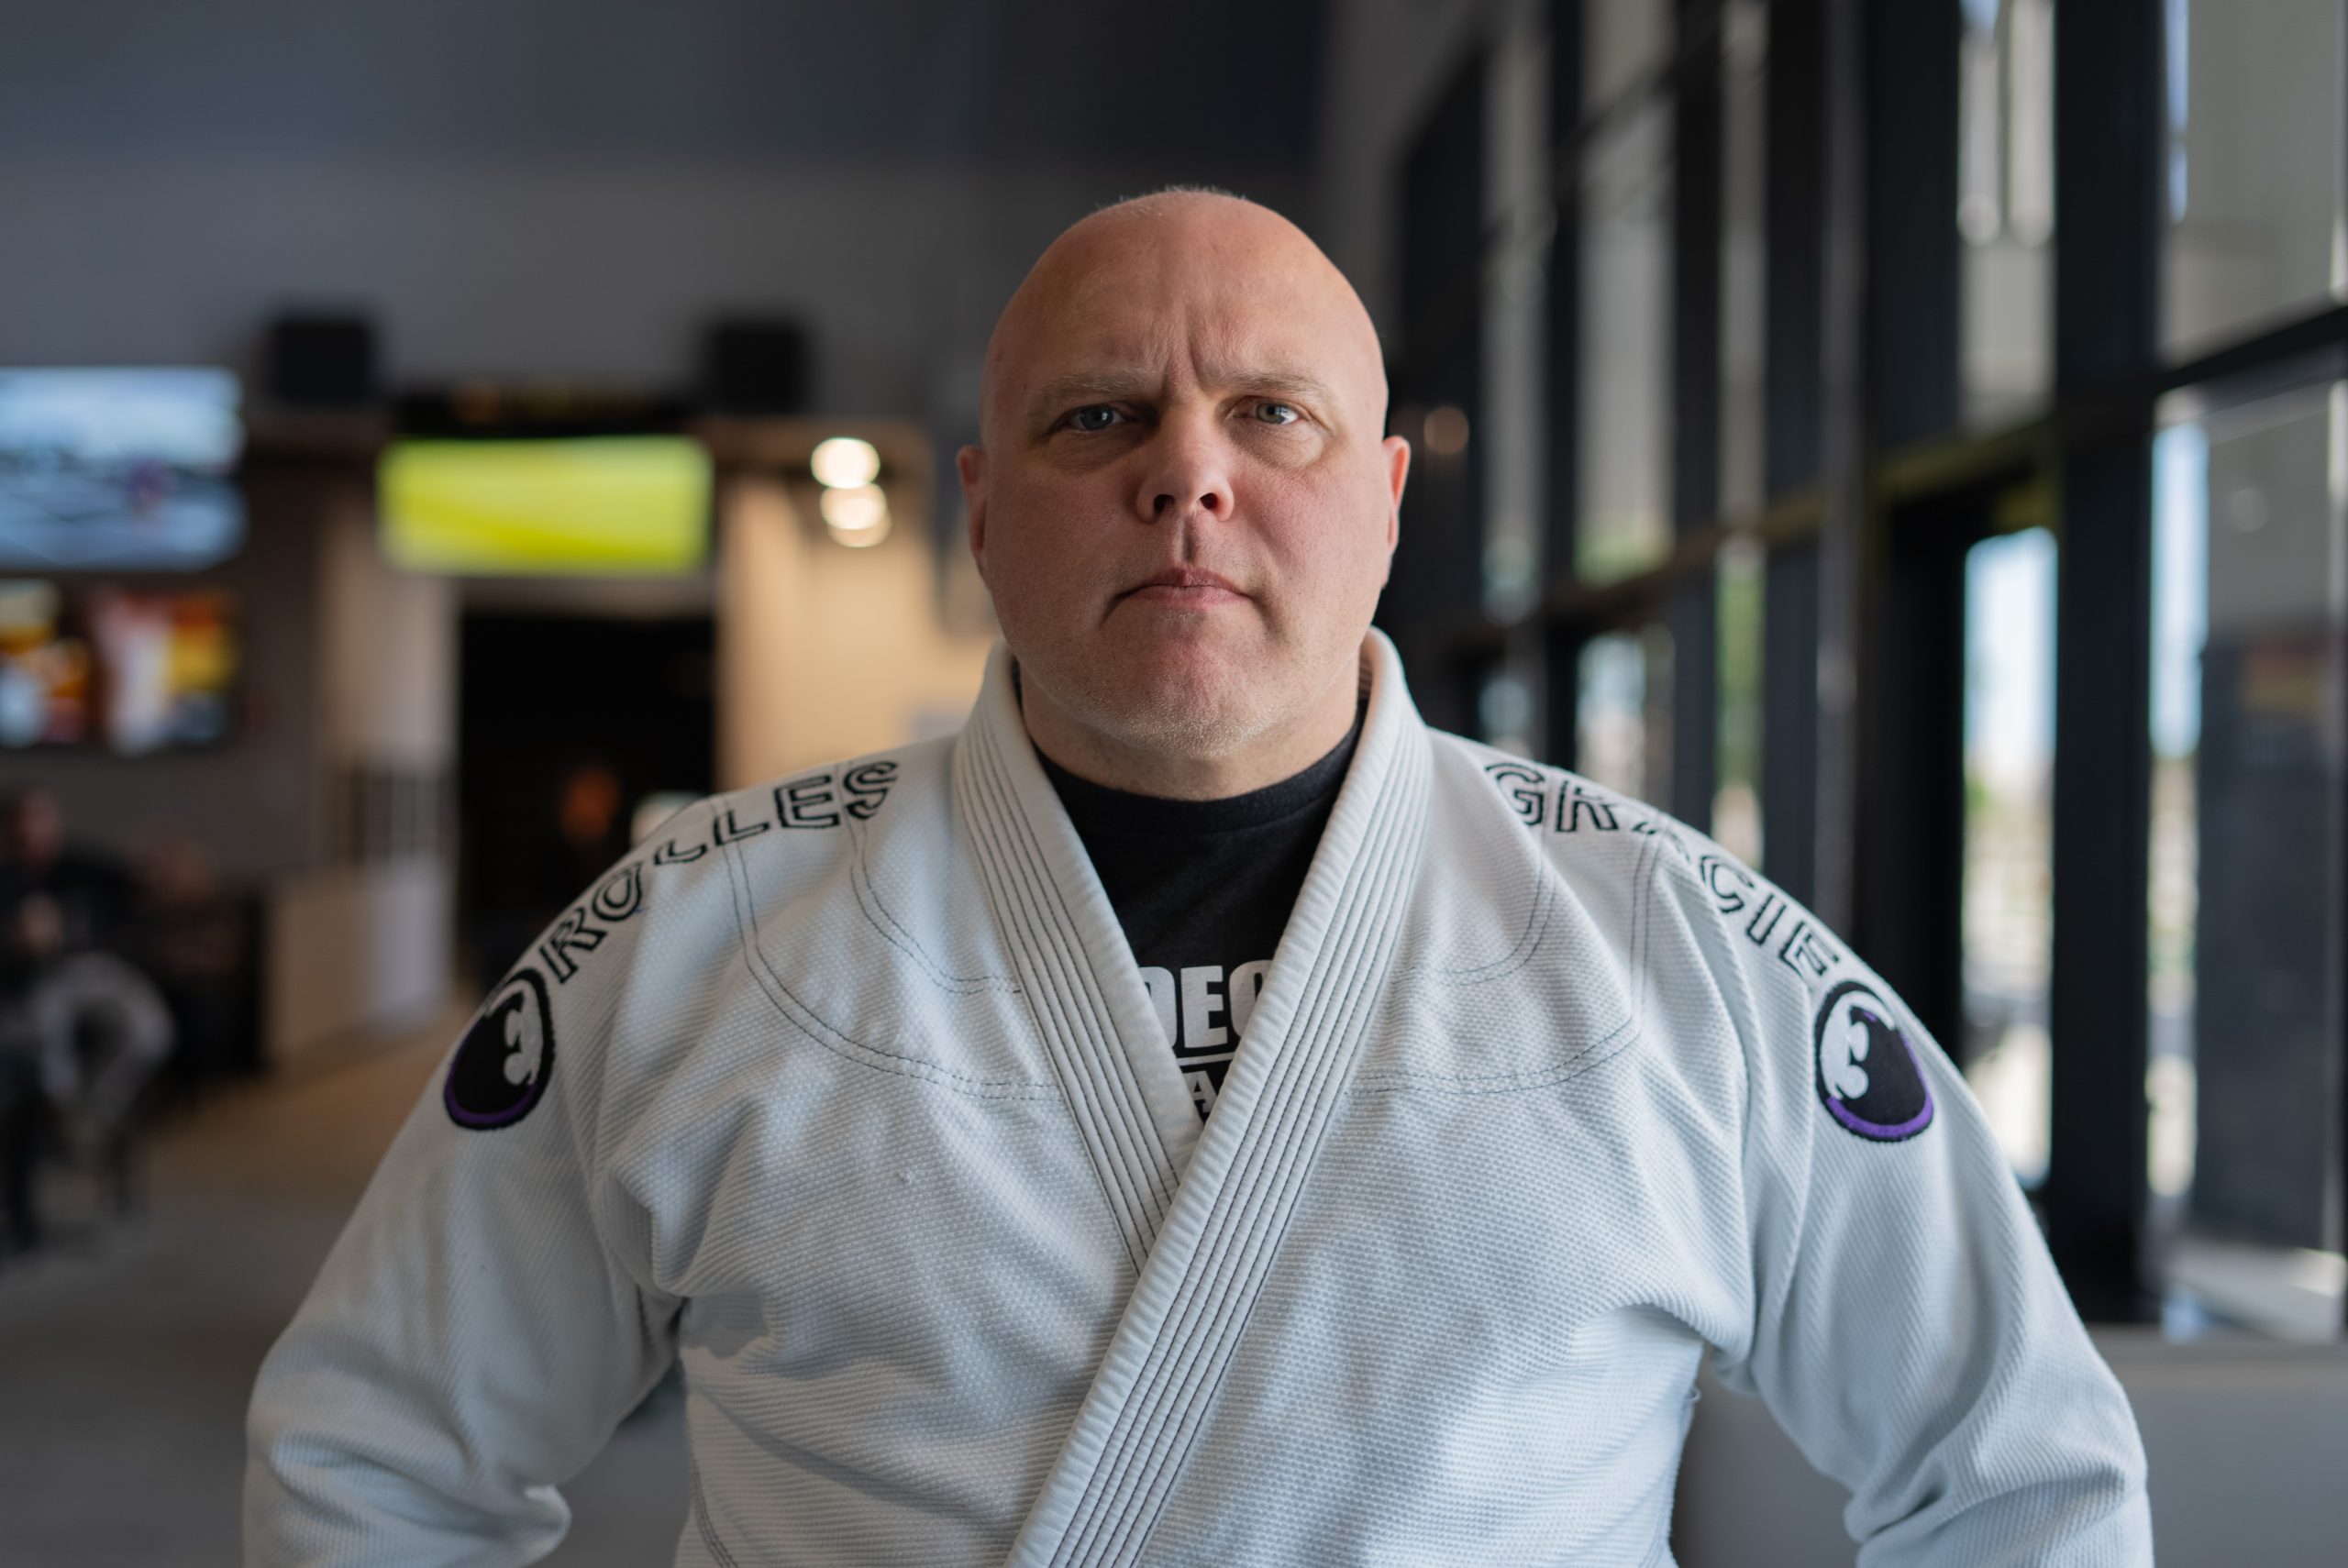 Roman Bittencourt teaches Brazilian Jiu Jitsu at Decision Tactical every Saturday in Sanford, FL